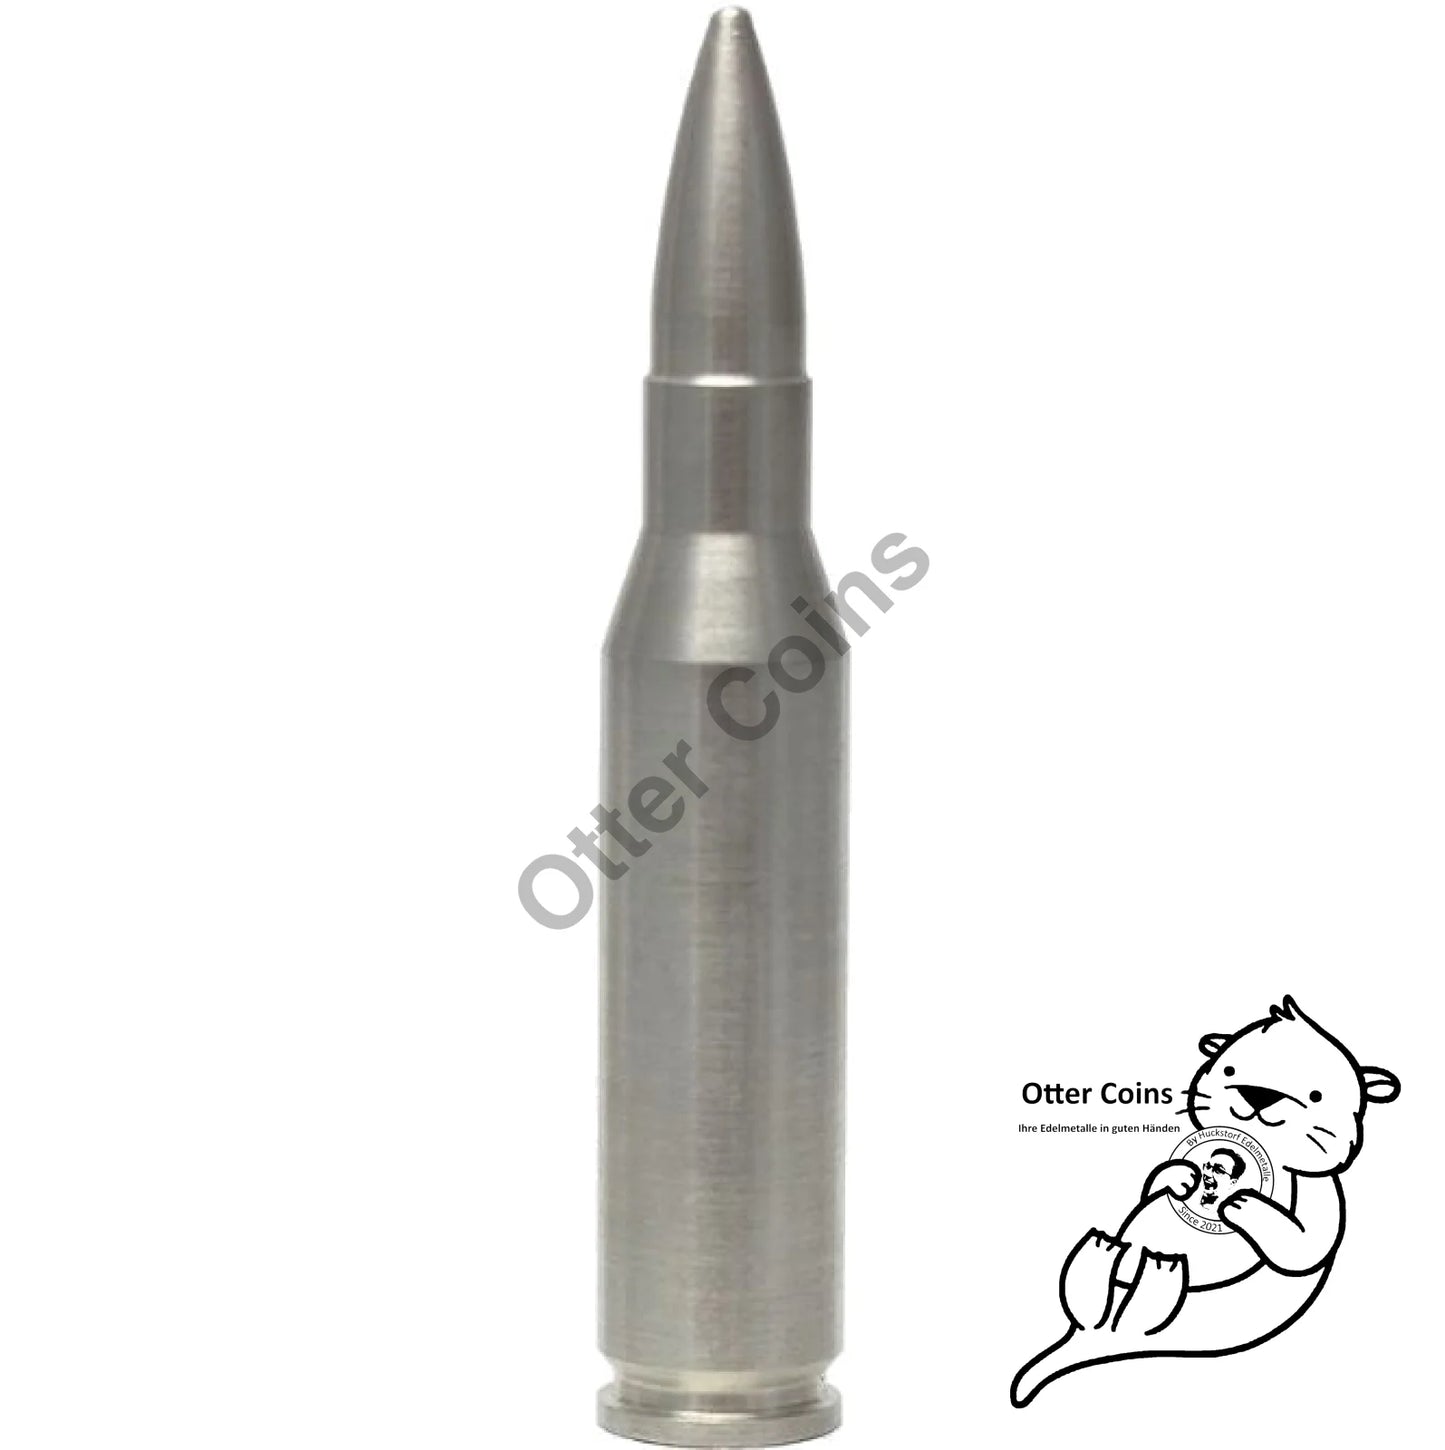 2 oz Silber Bullet.308 Caliber Replika**